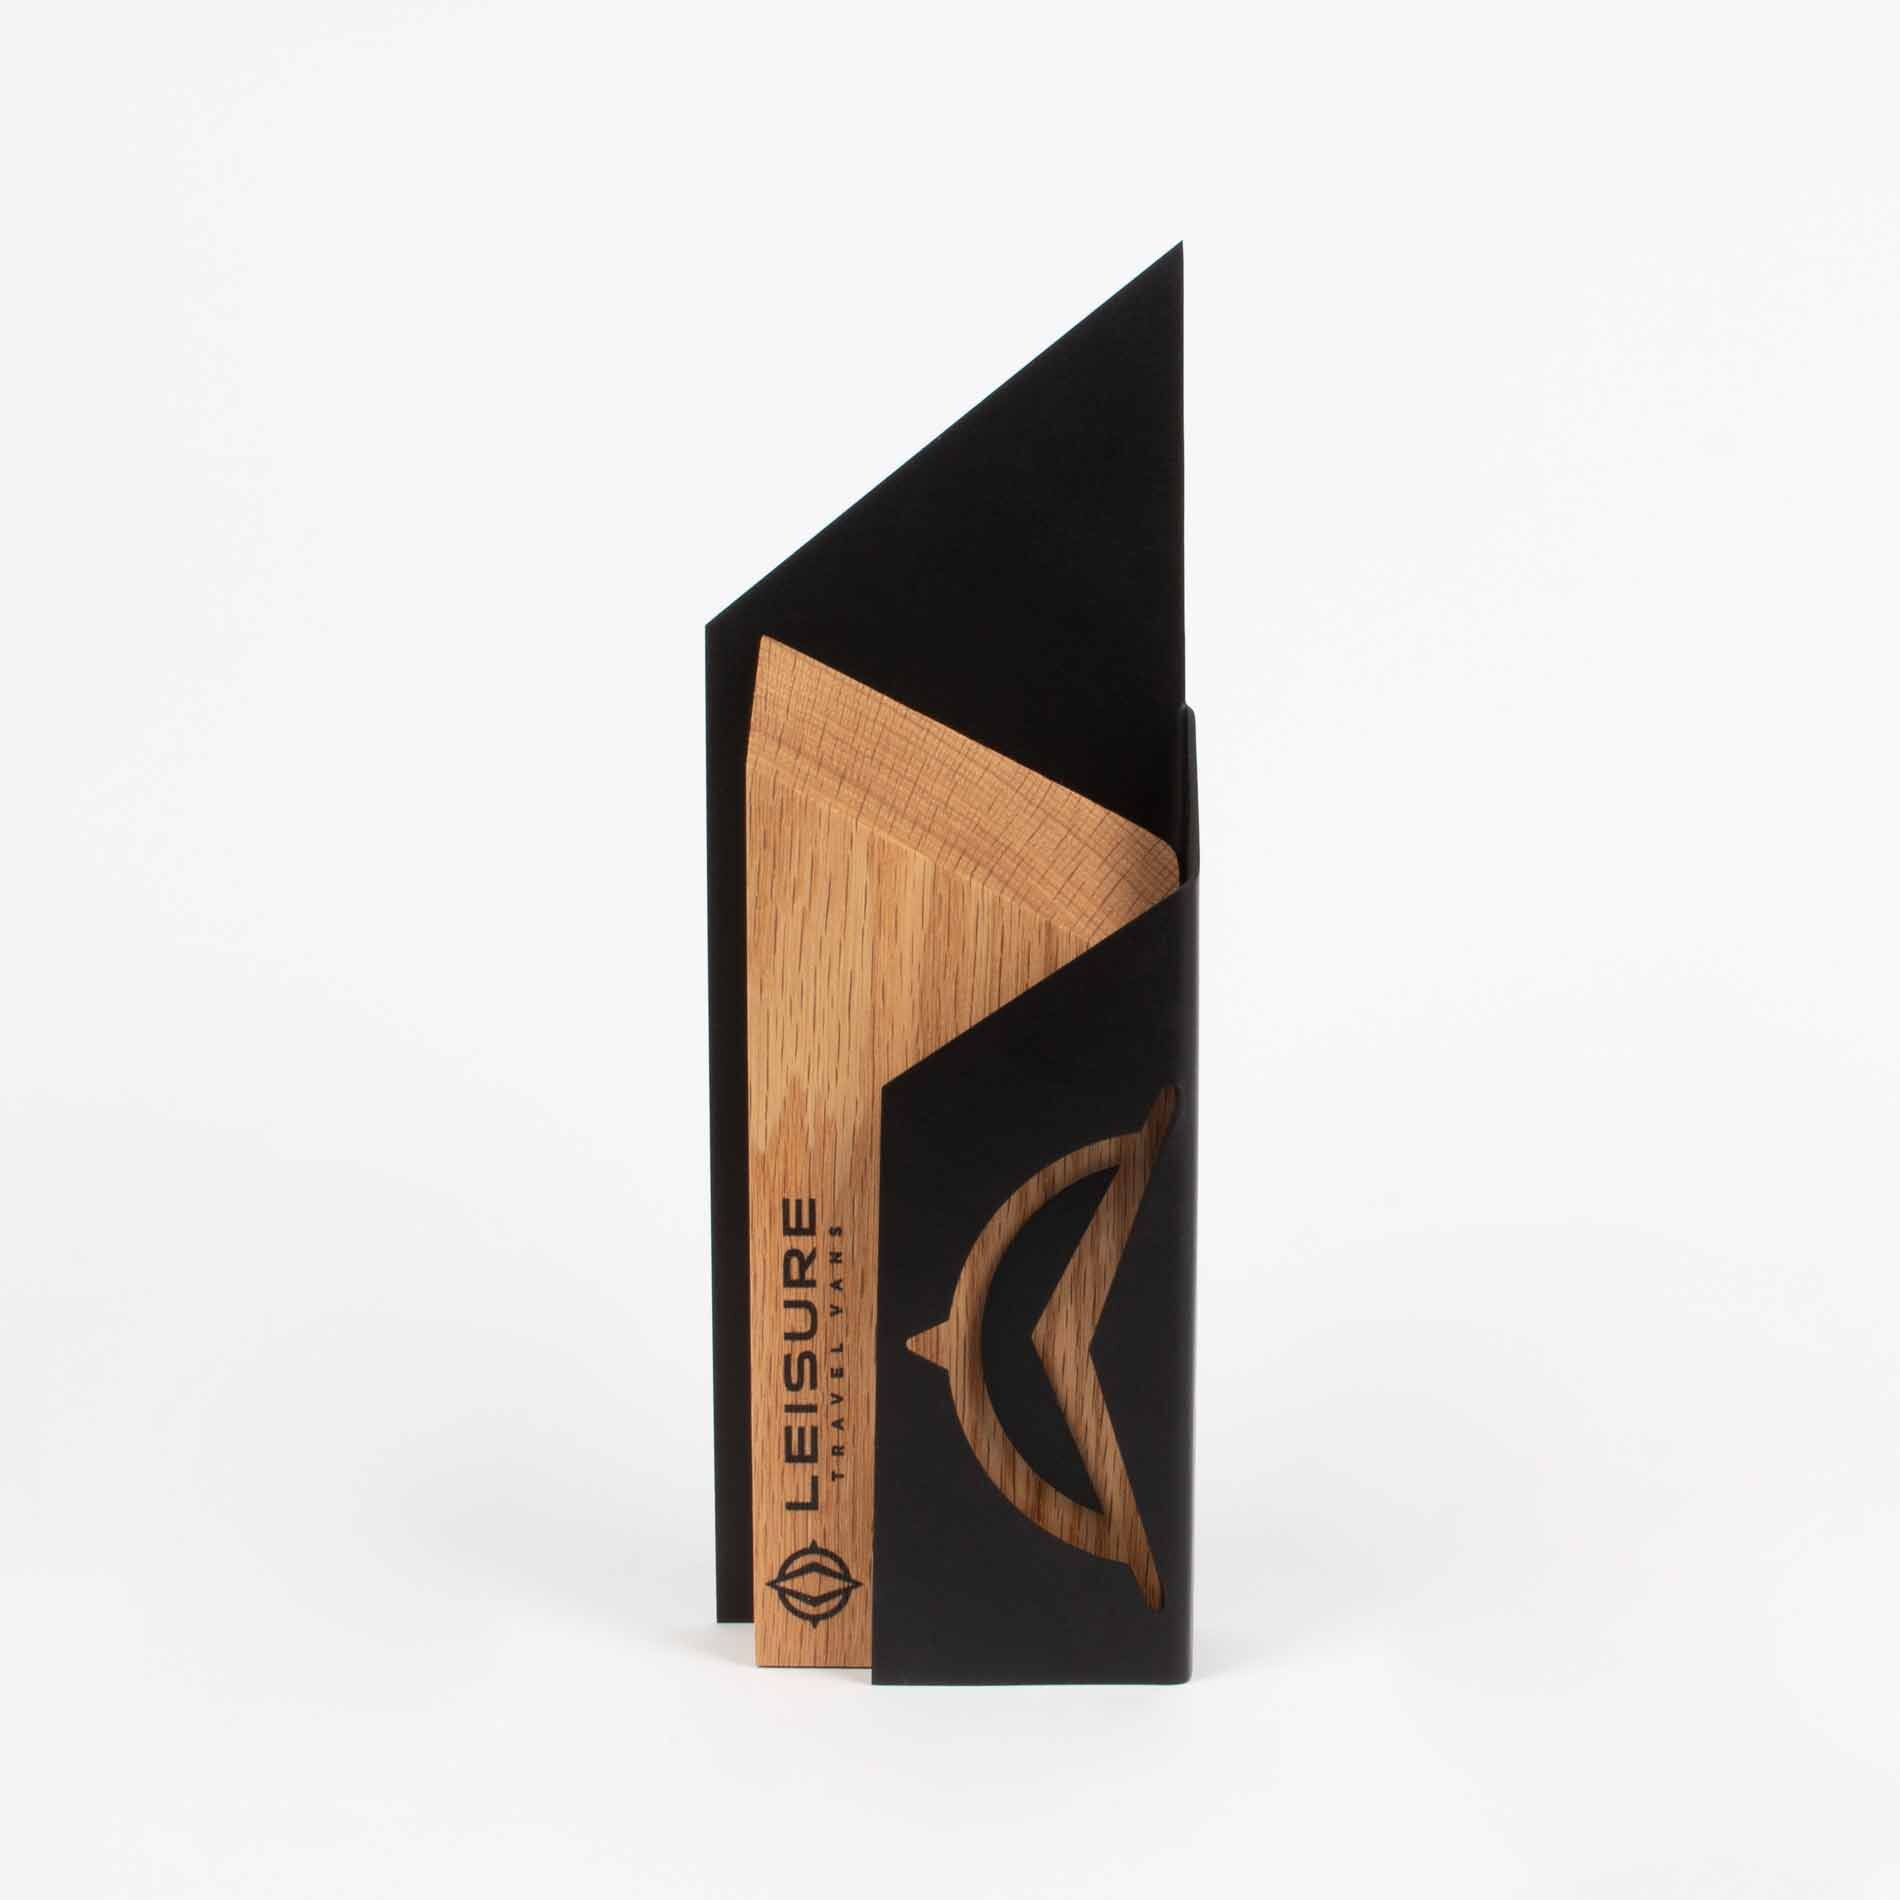 Leisure Travel vans dealer appreciation awards custom wood and metal laser engraved